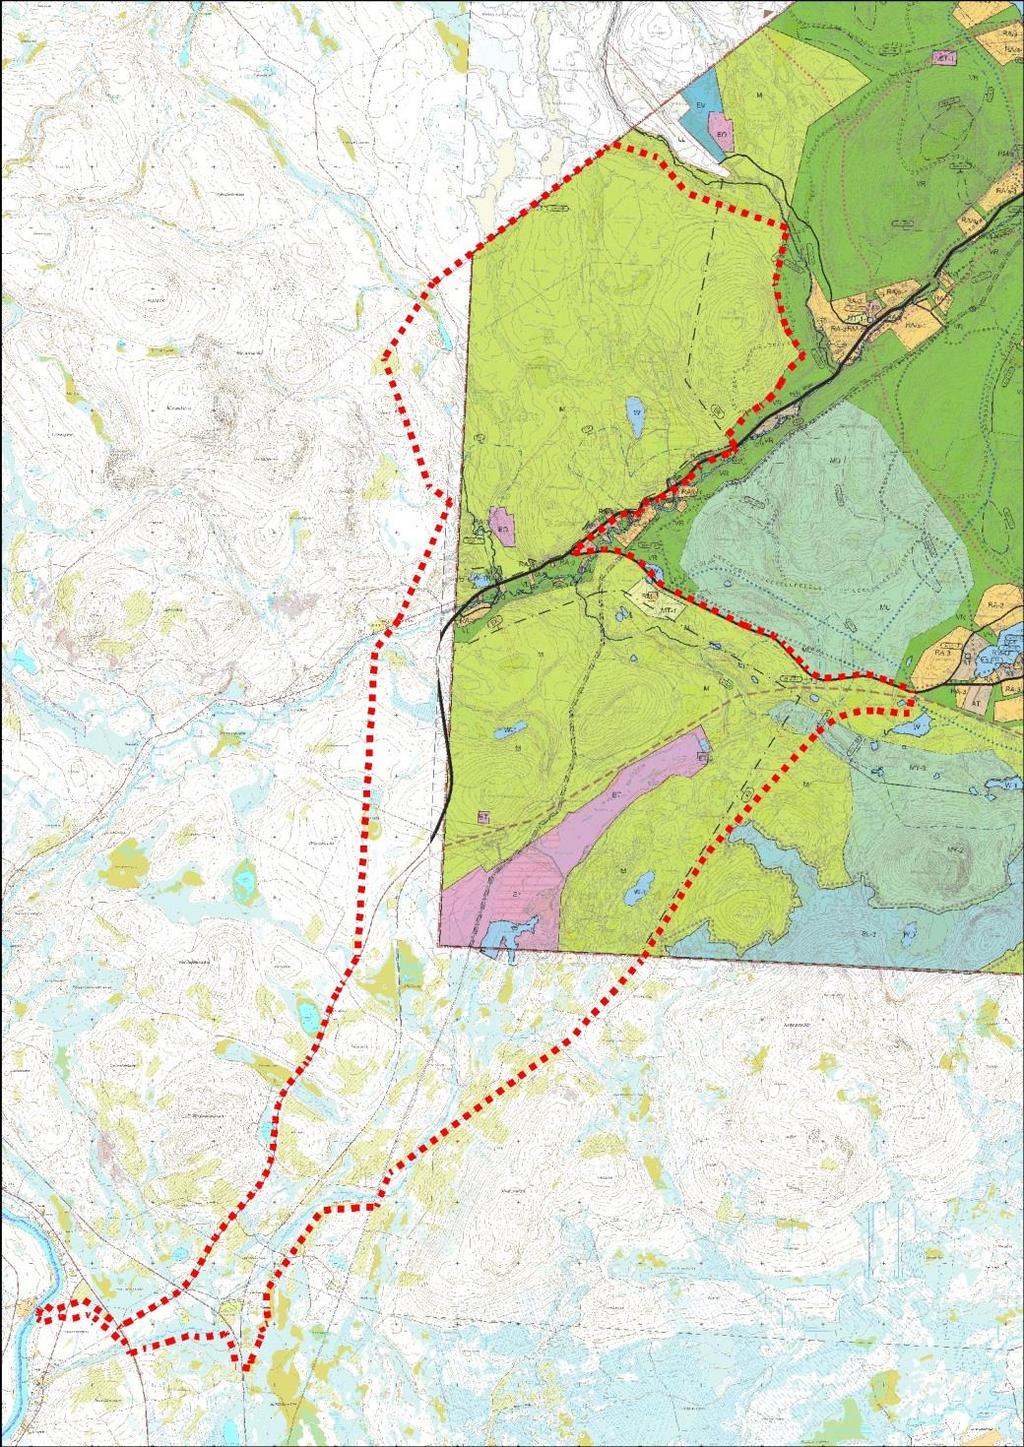 Ote osalla osayleiskaavoitettavaa aluetta voimassa olevasta Ylläksen osayleiskaavasta. Hannukaisen kaivosalueen osayleiskaavan rajaus punaisella katkoviivalla. 3.